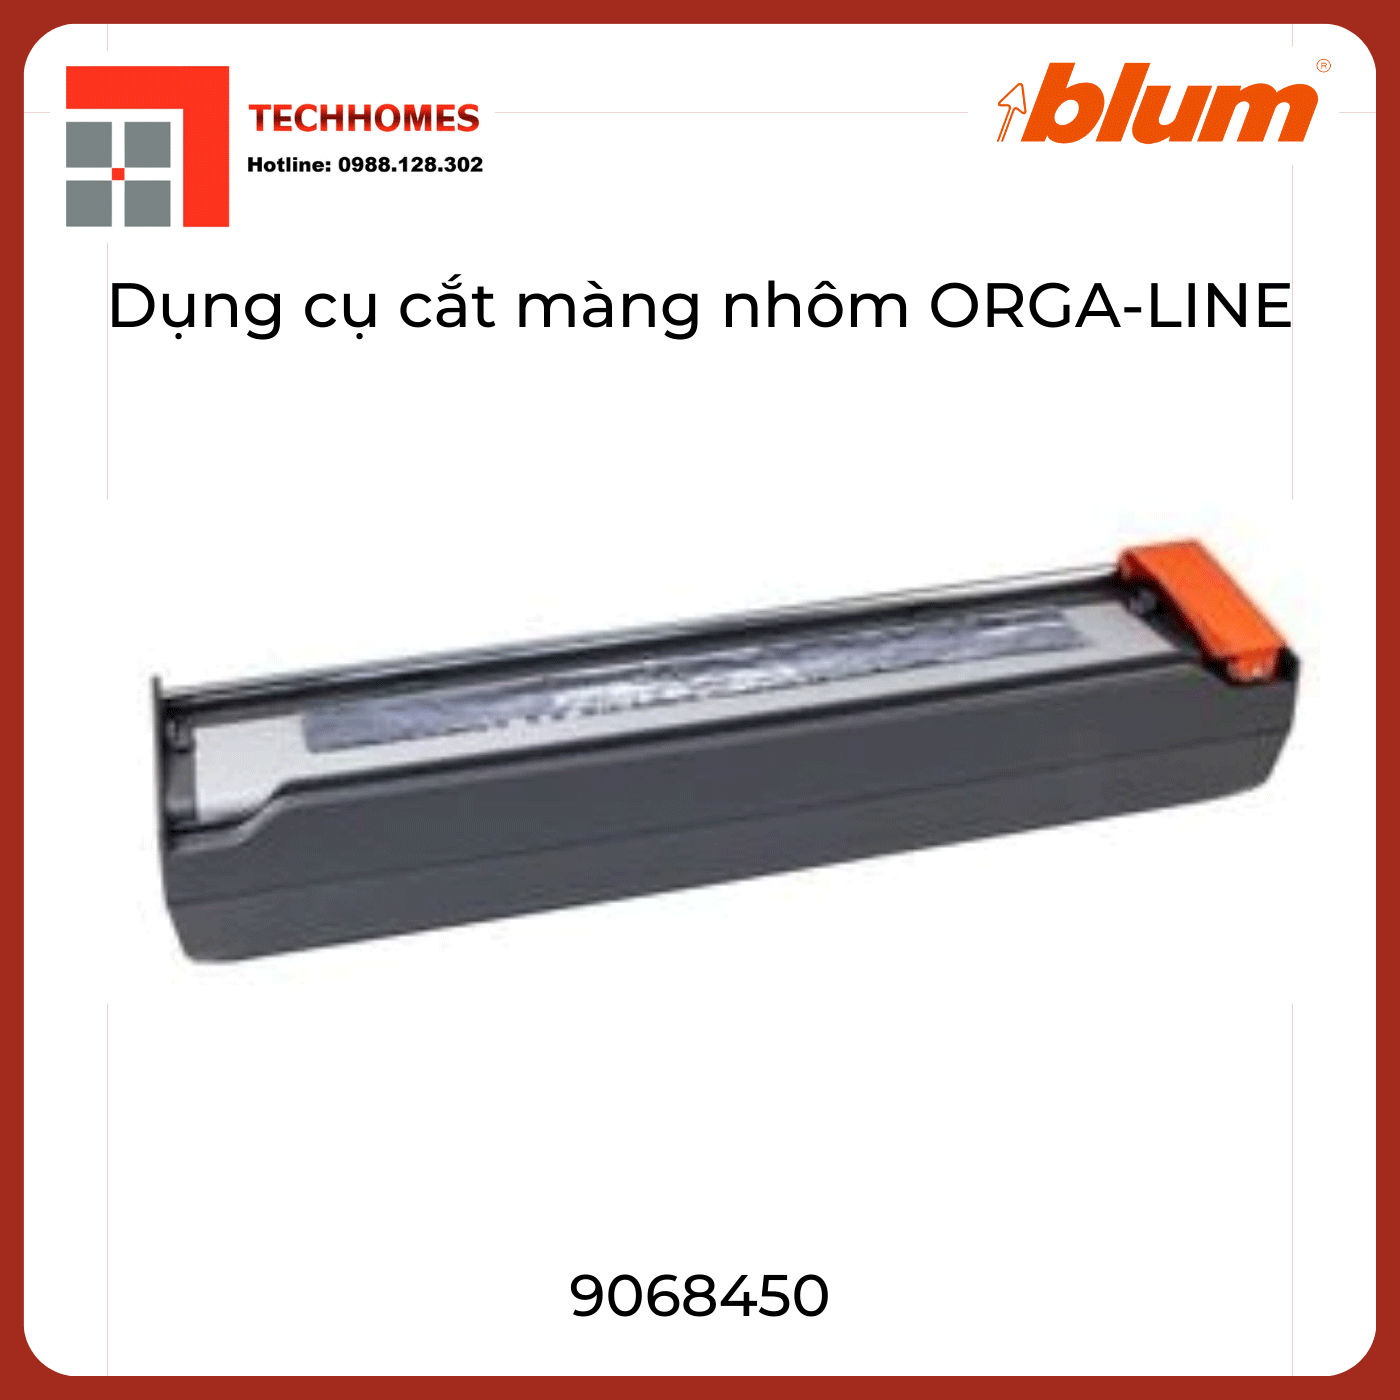 Dụng cụ cắt giấy bạc ORGA-LINE ZSZ.02F0 9068450